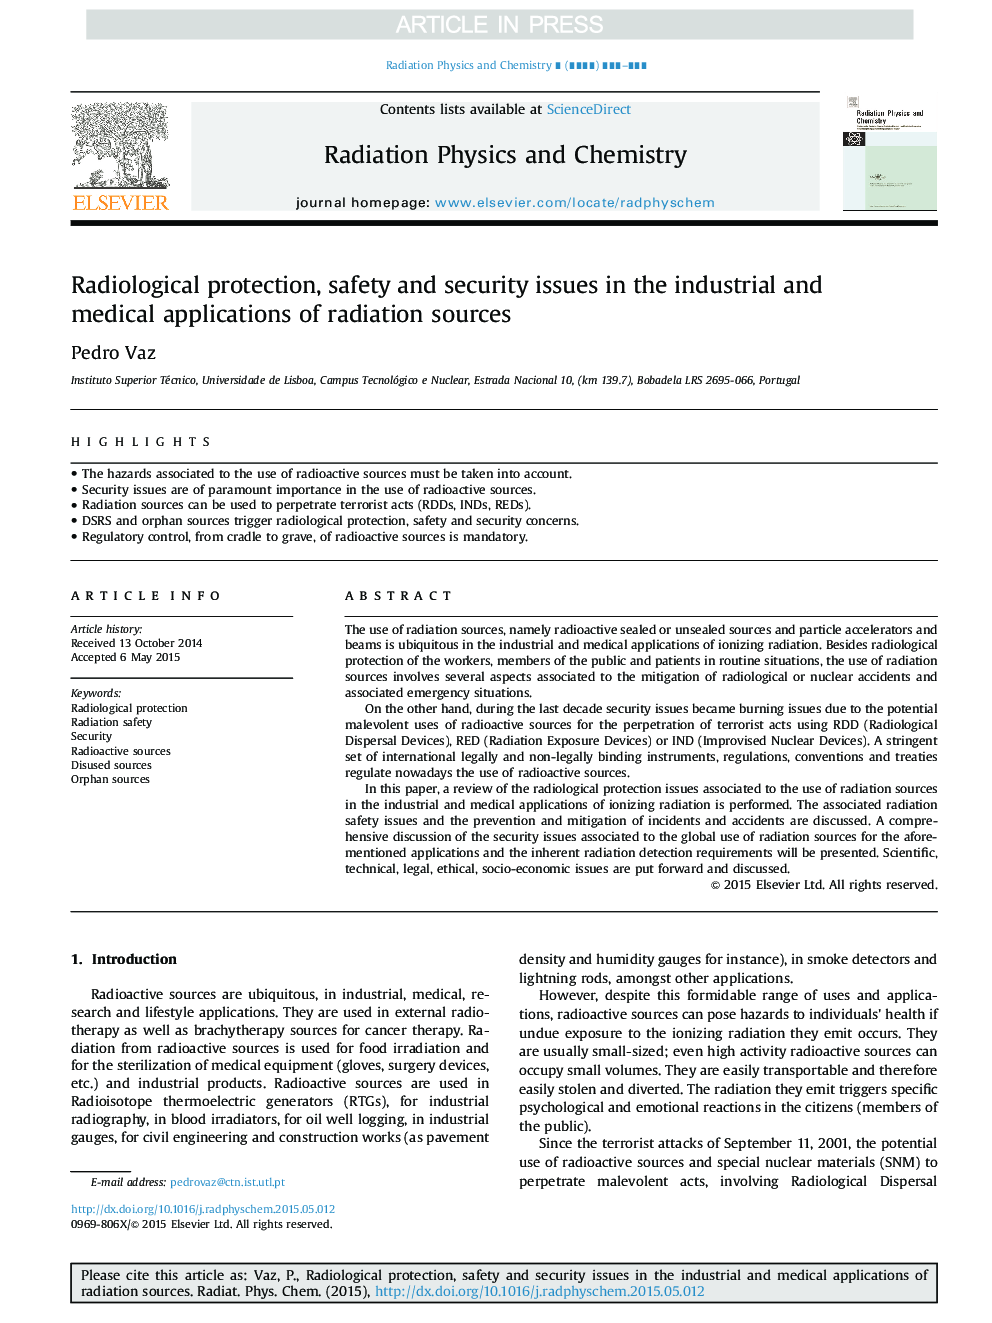 حفاظت رادیولوژیکی، مسائل ایمنی و امنیتی در کاربردهای صنعتی و پزشکی منابع پرتابل 